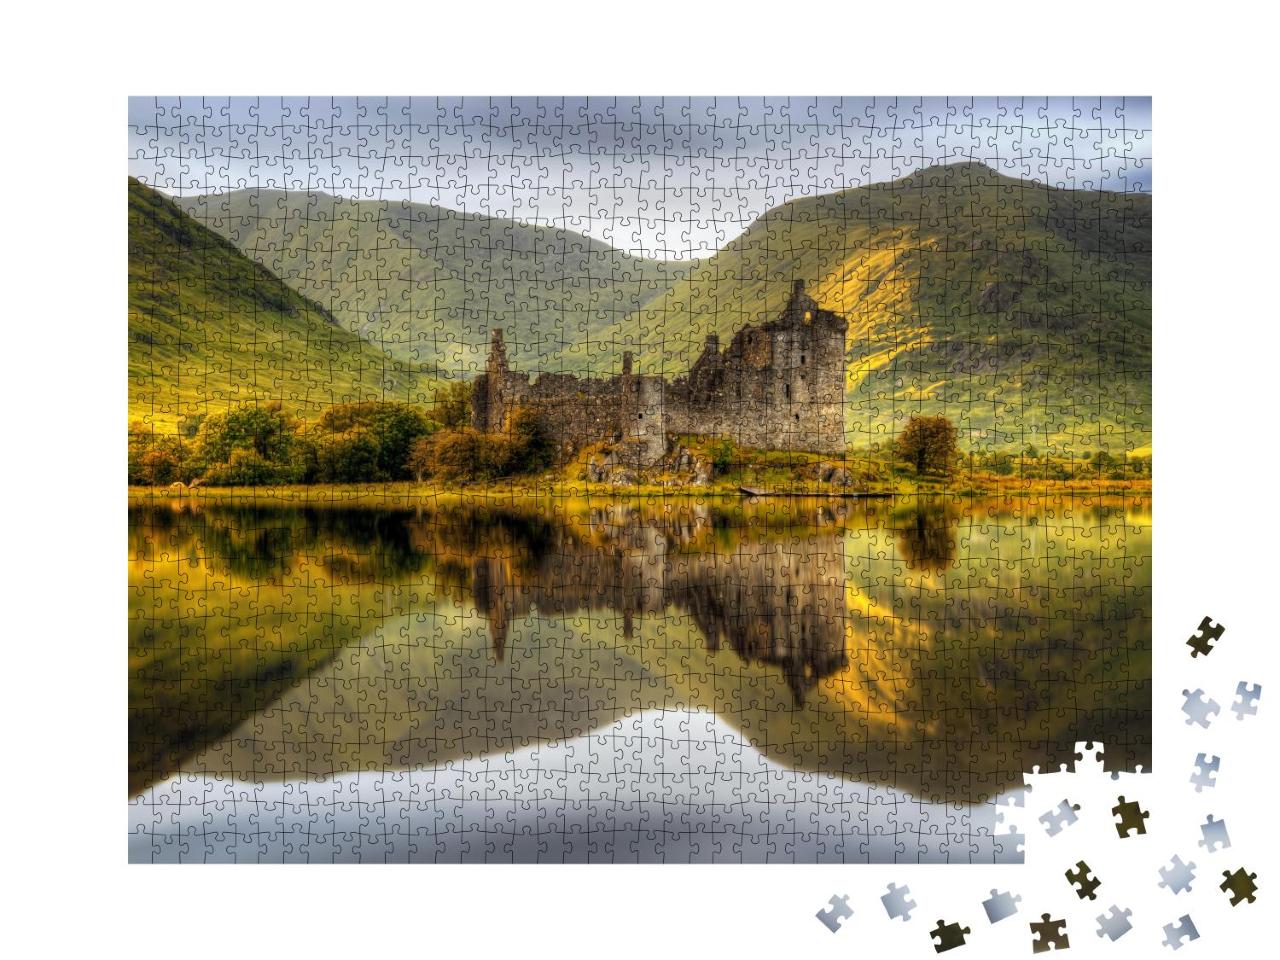 Puzzle 1000 Teile „Das Kilchurn Castle spiegelt sich im Loch Awe bei Sonnenuntergang, Schottland“